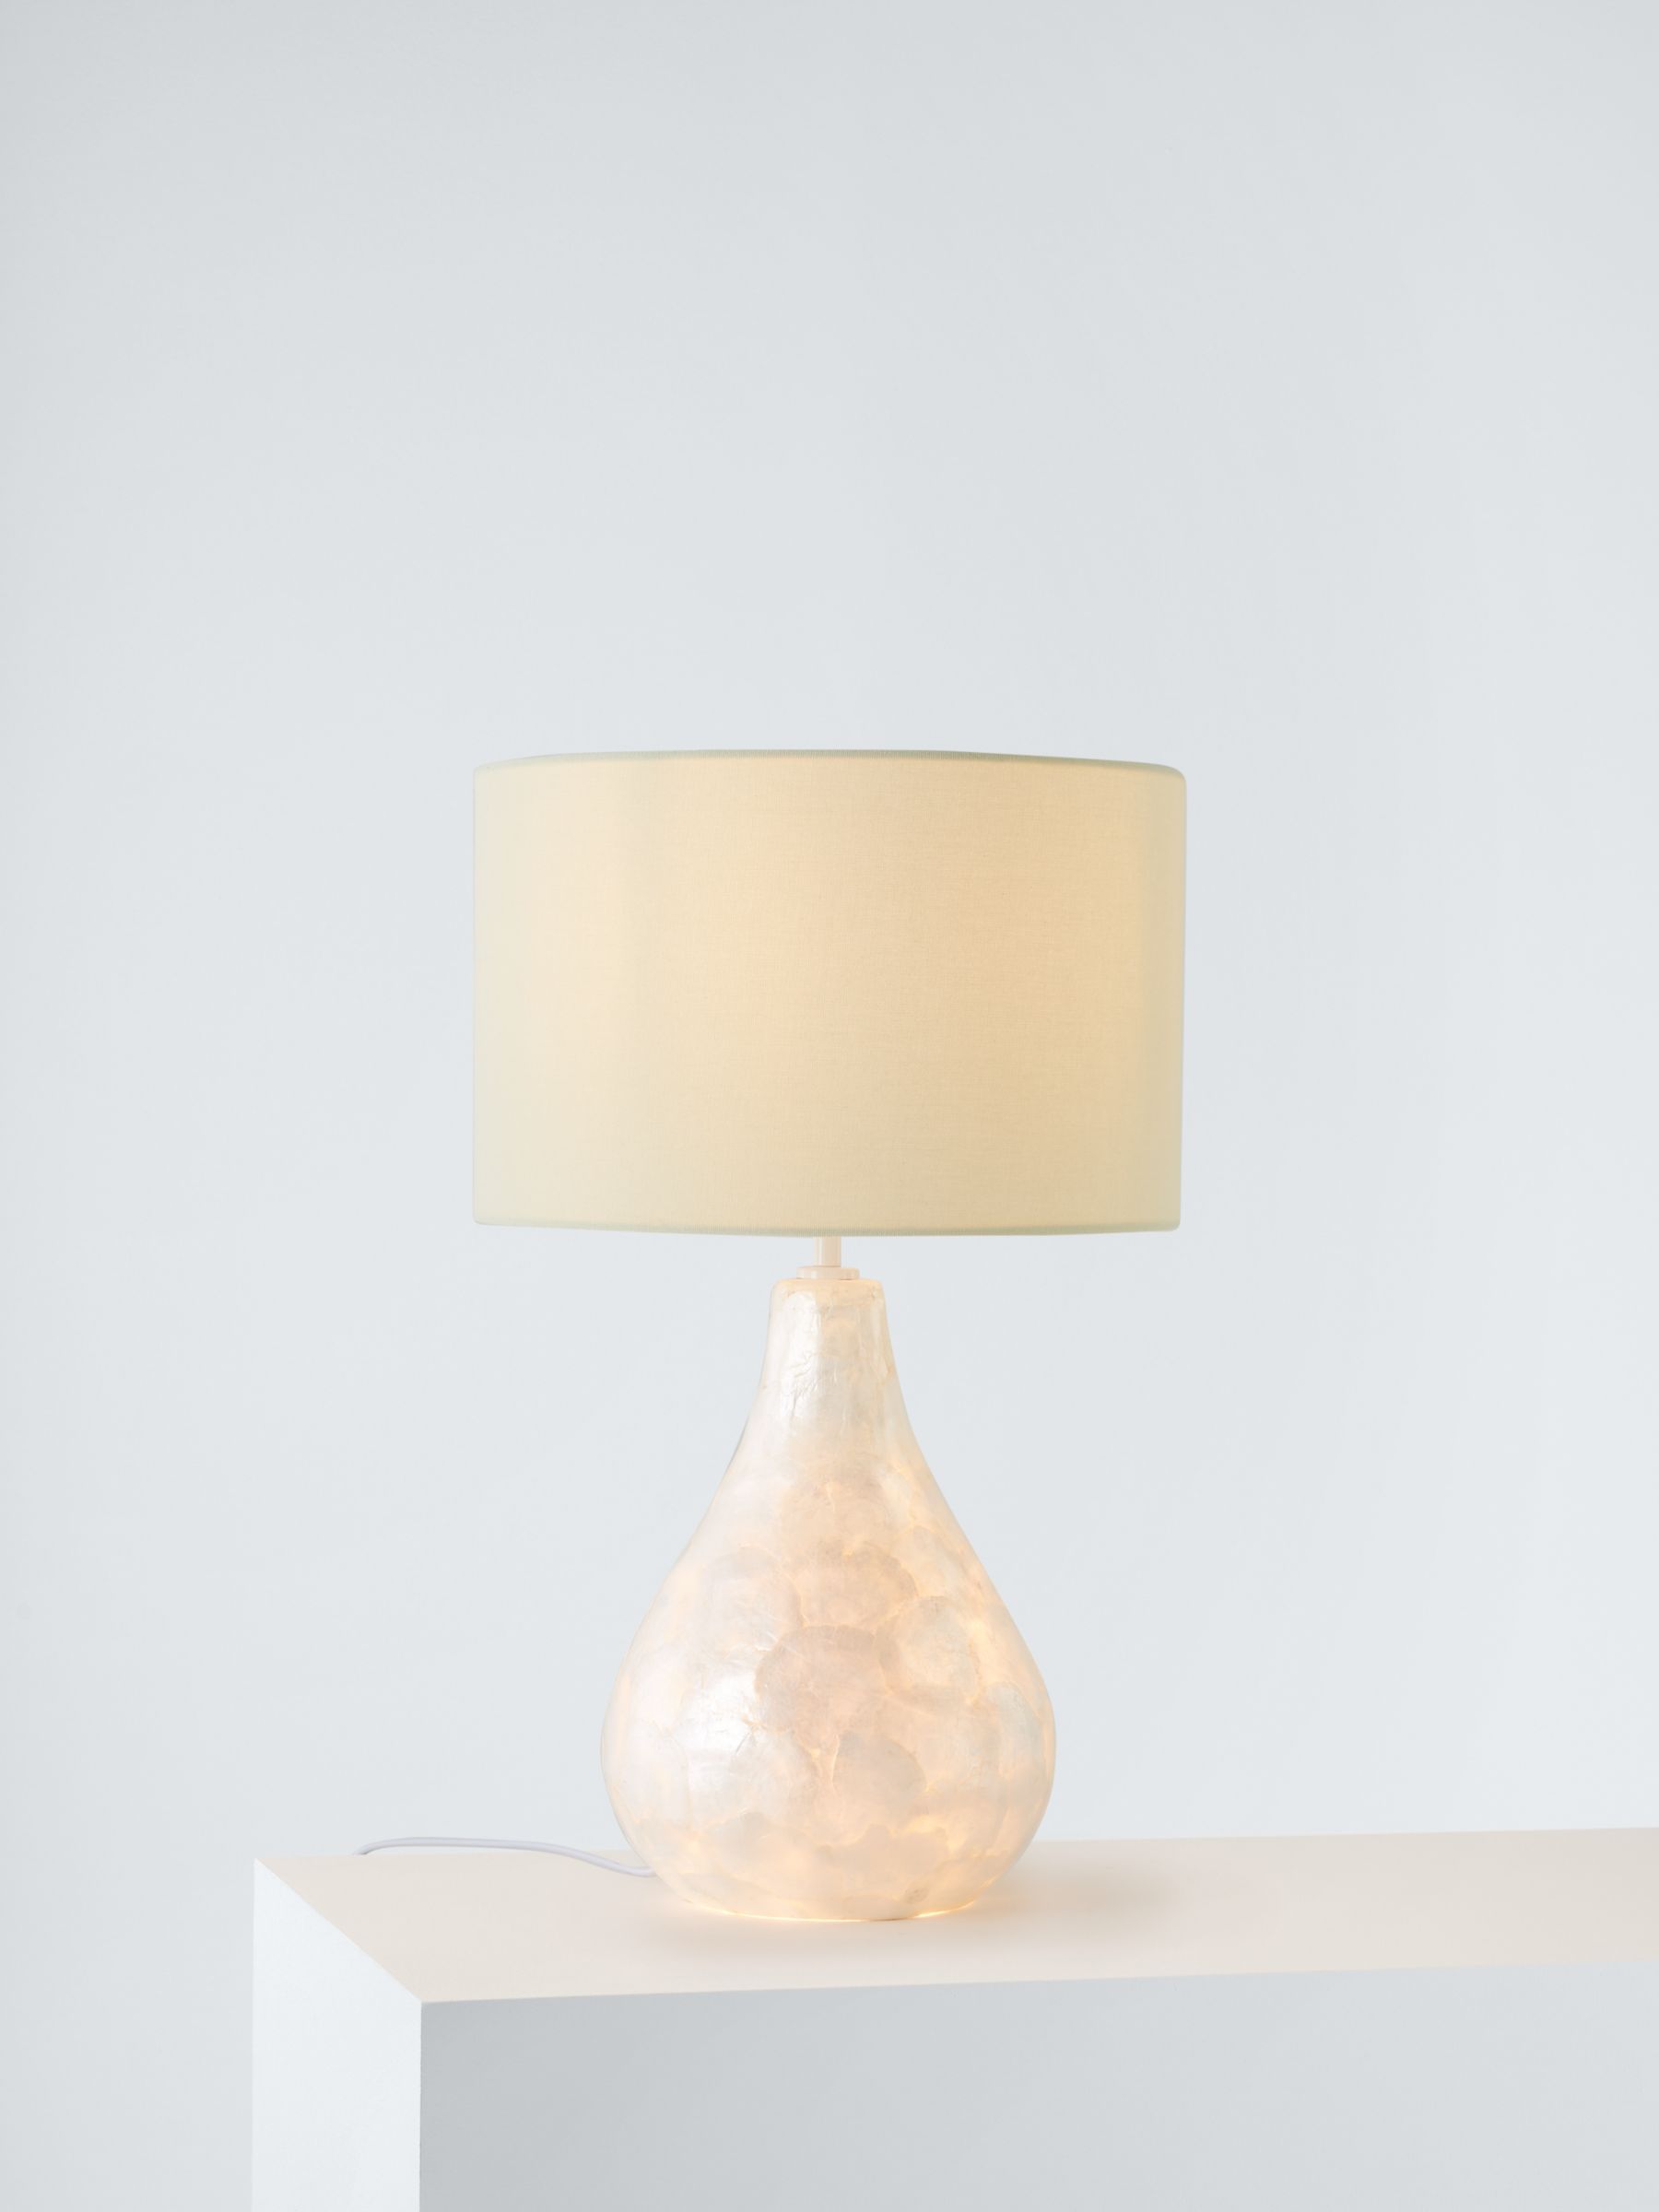 Pearl Table Lamp 154221